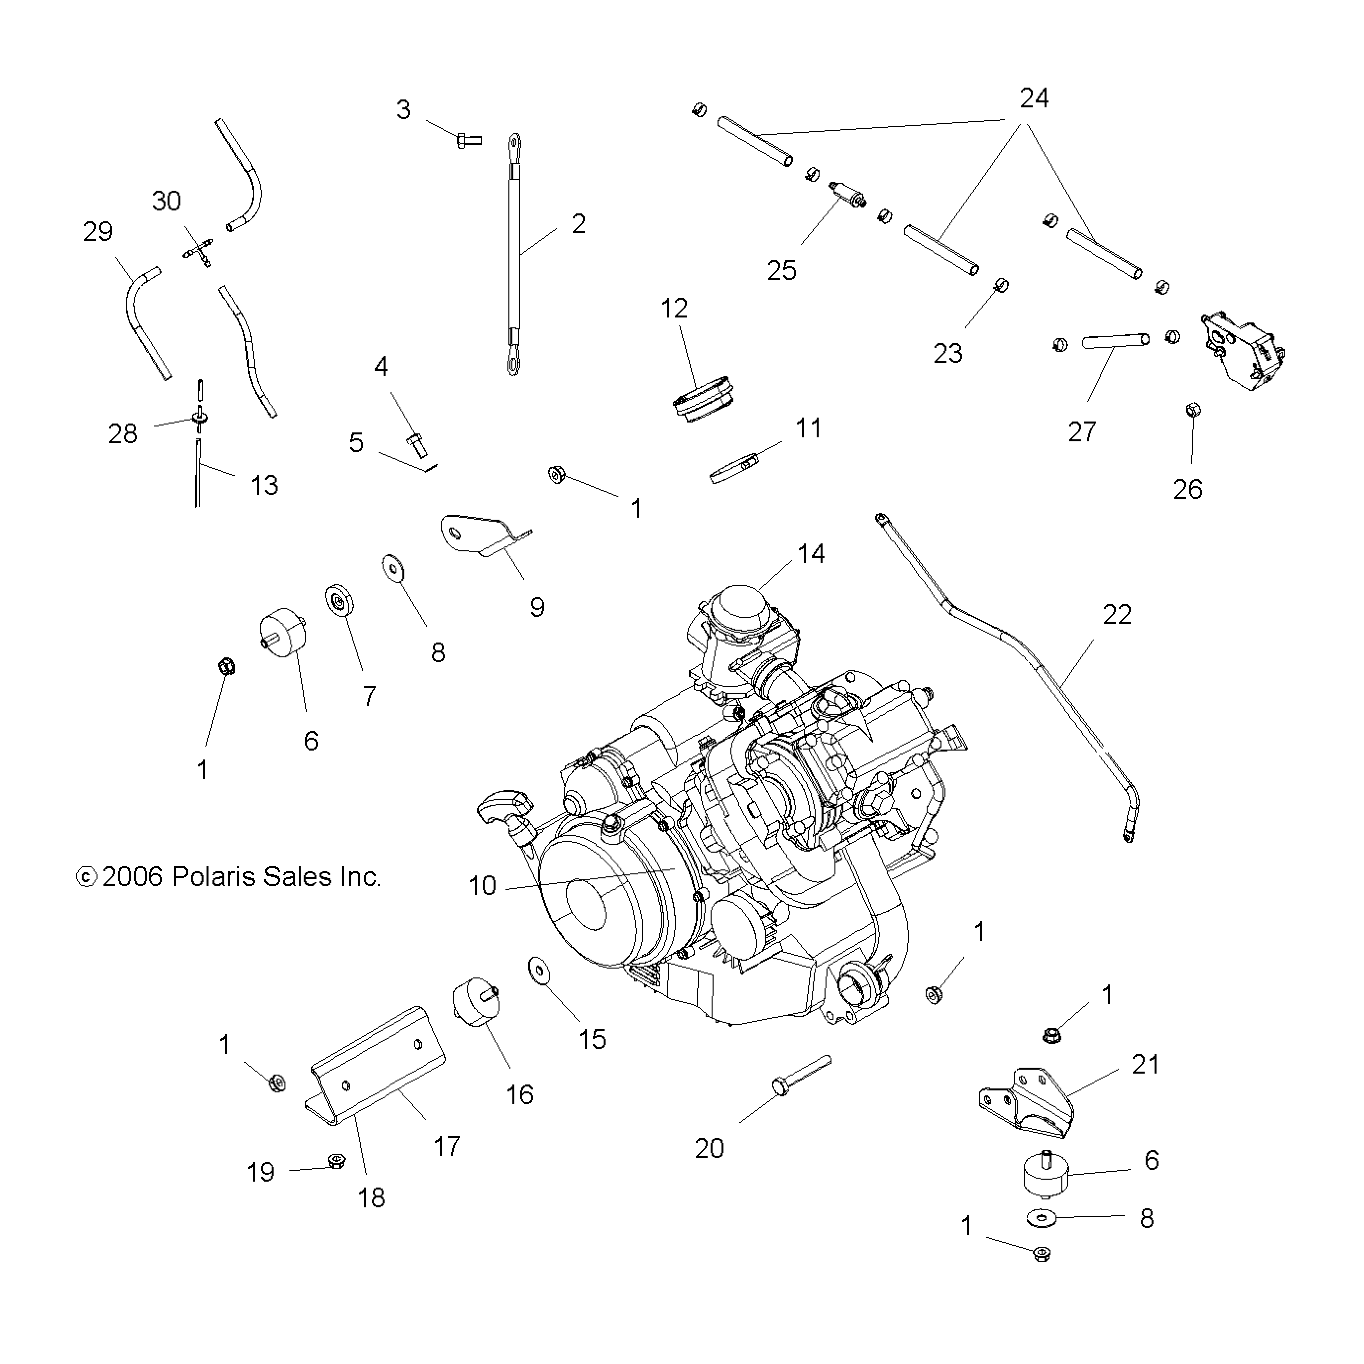 Foto diagrama Polaris que contem a peça 3021181